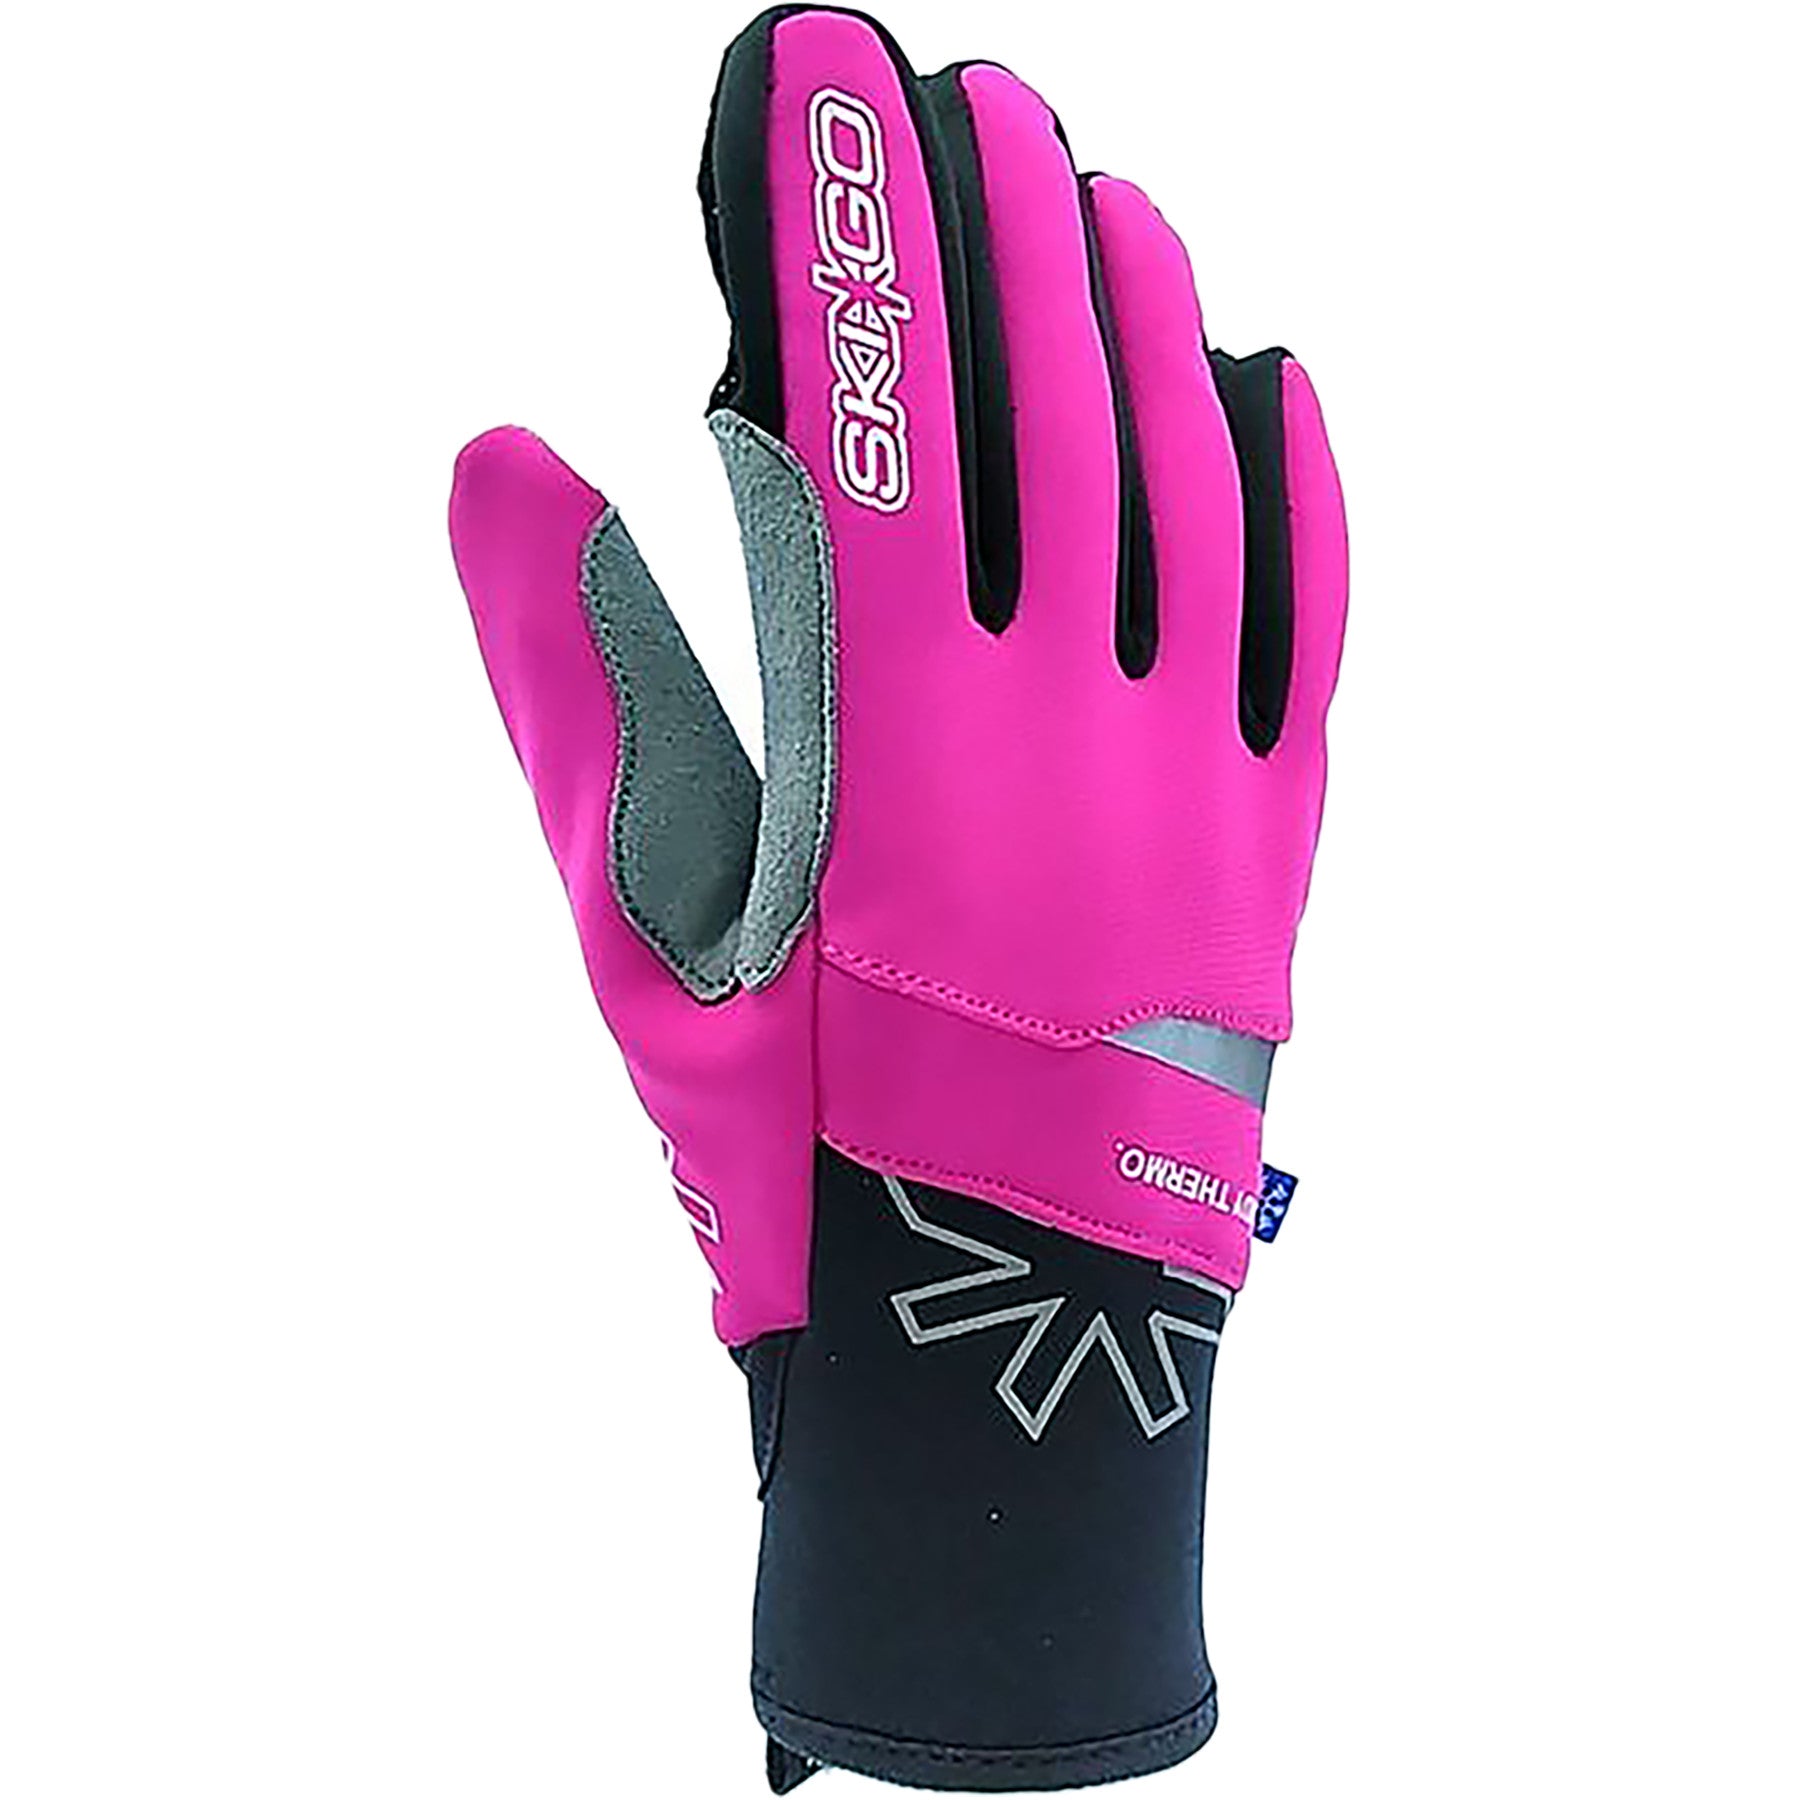 SkiGo X-Skin Thermo Lady Glove